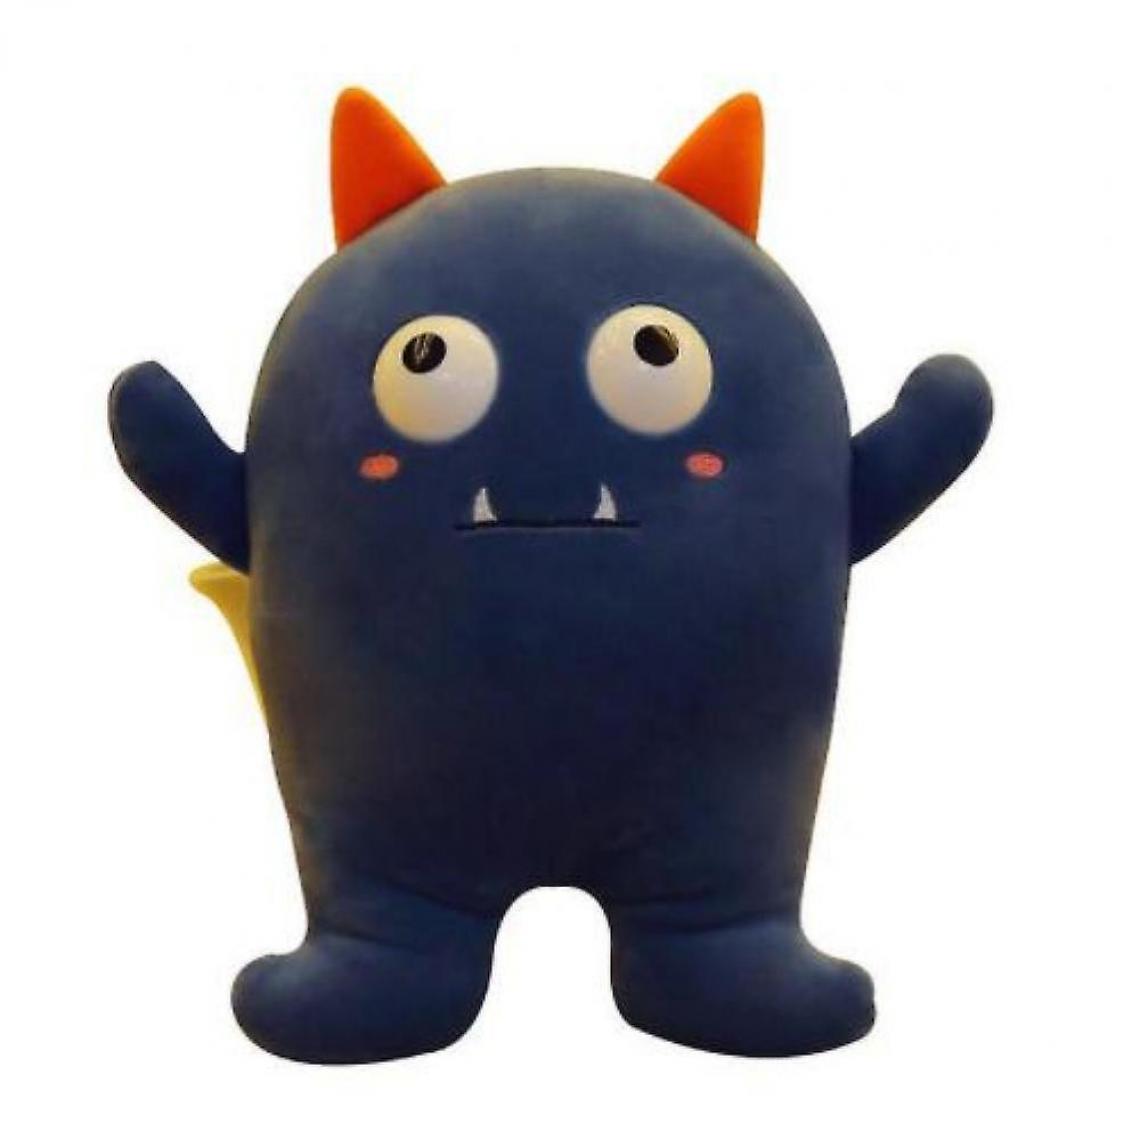 Universal - Jouets en peluche créatifs petits démons poupées petits monstres oreillers dessins animés jouets cadeaux jouets (bleu foncé) - Animaux